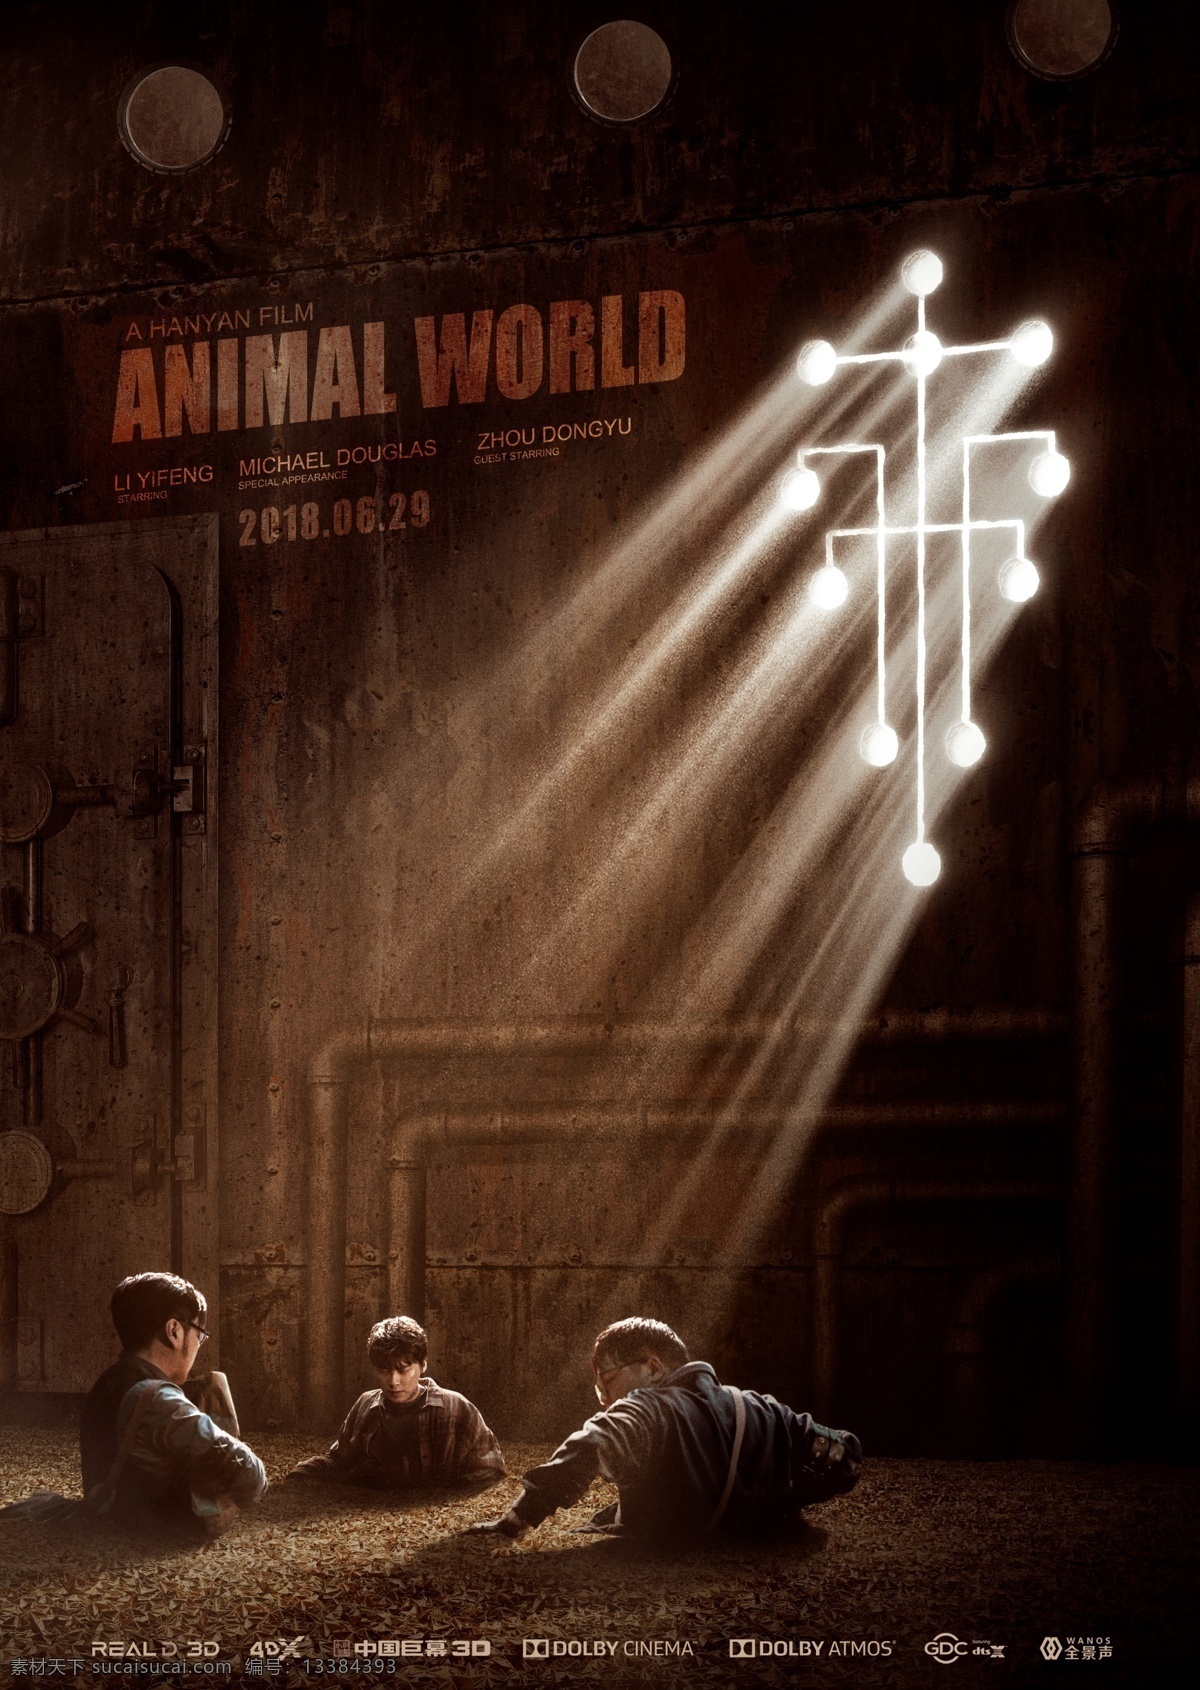 电影动物世界 国际版 预告 海报 电影 动物世界 李易峰 国产影片海报